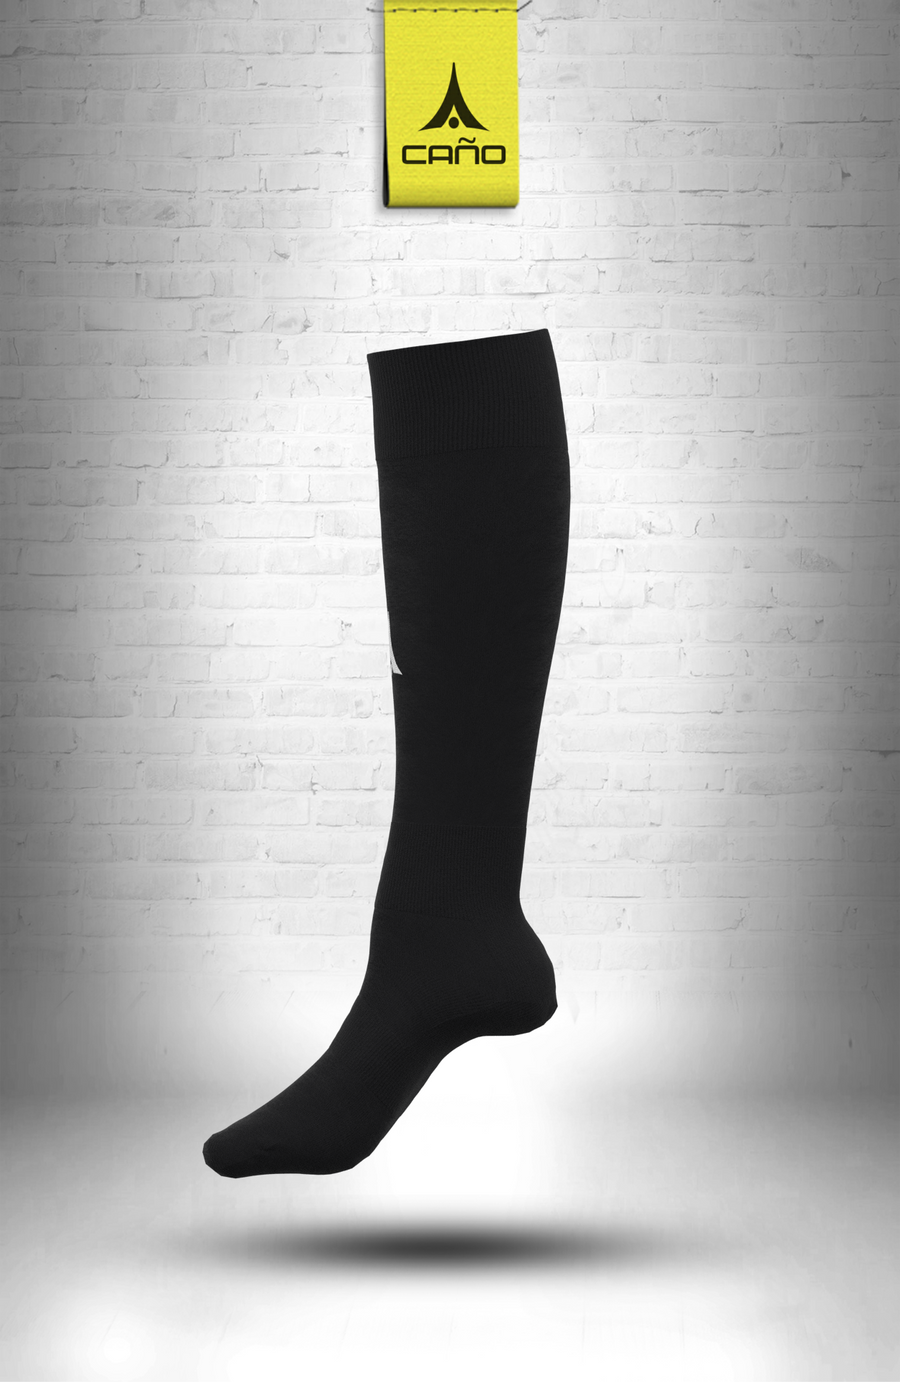 $10.00 - Caño Black Soccer Sock